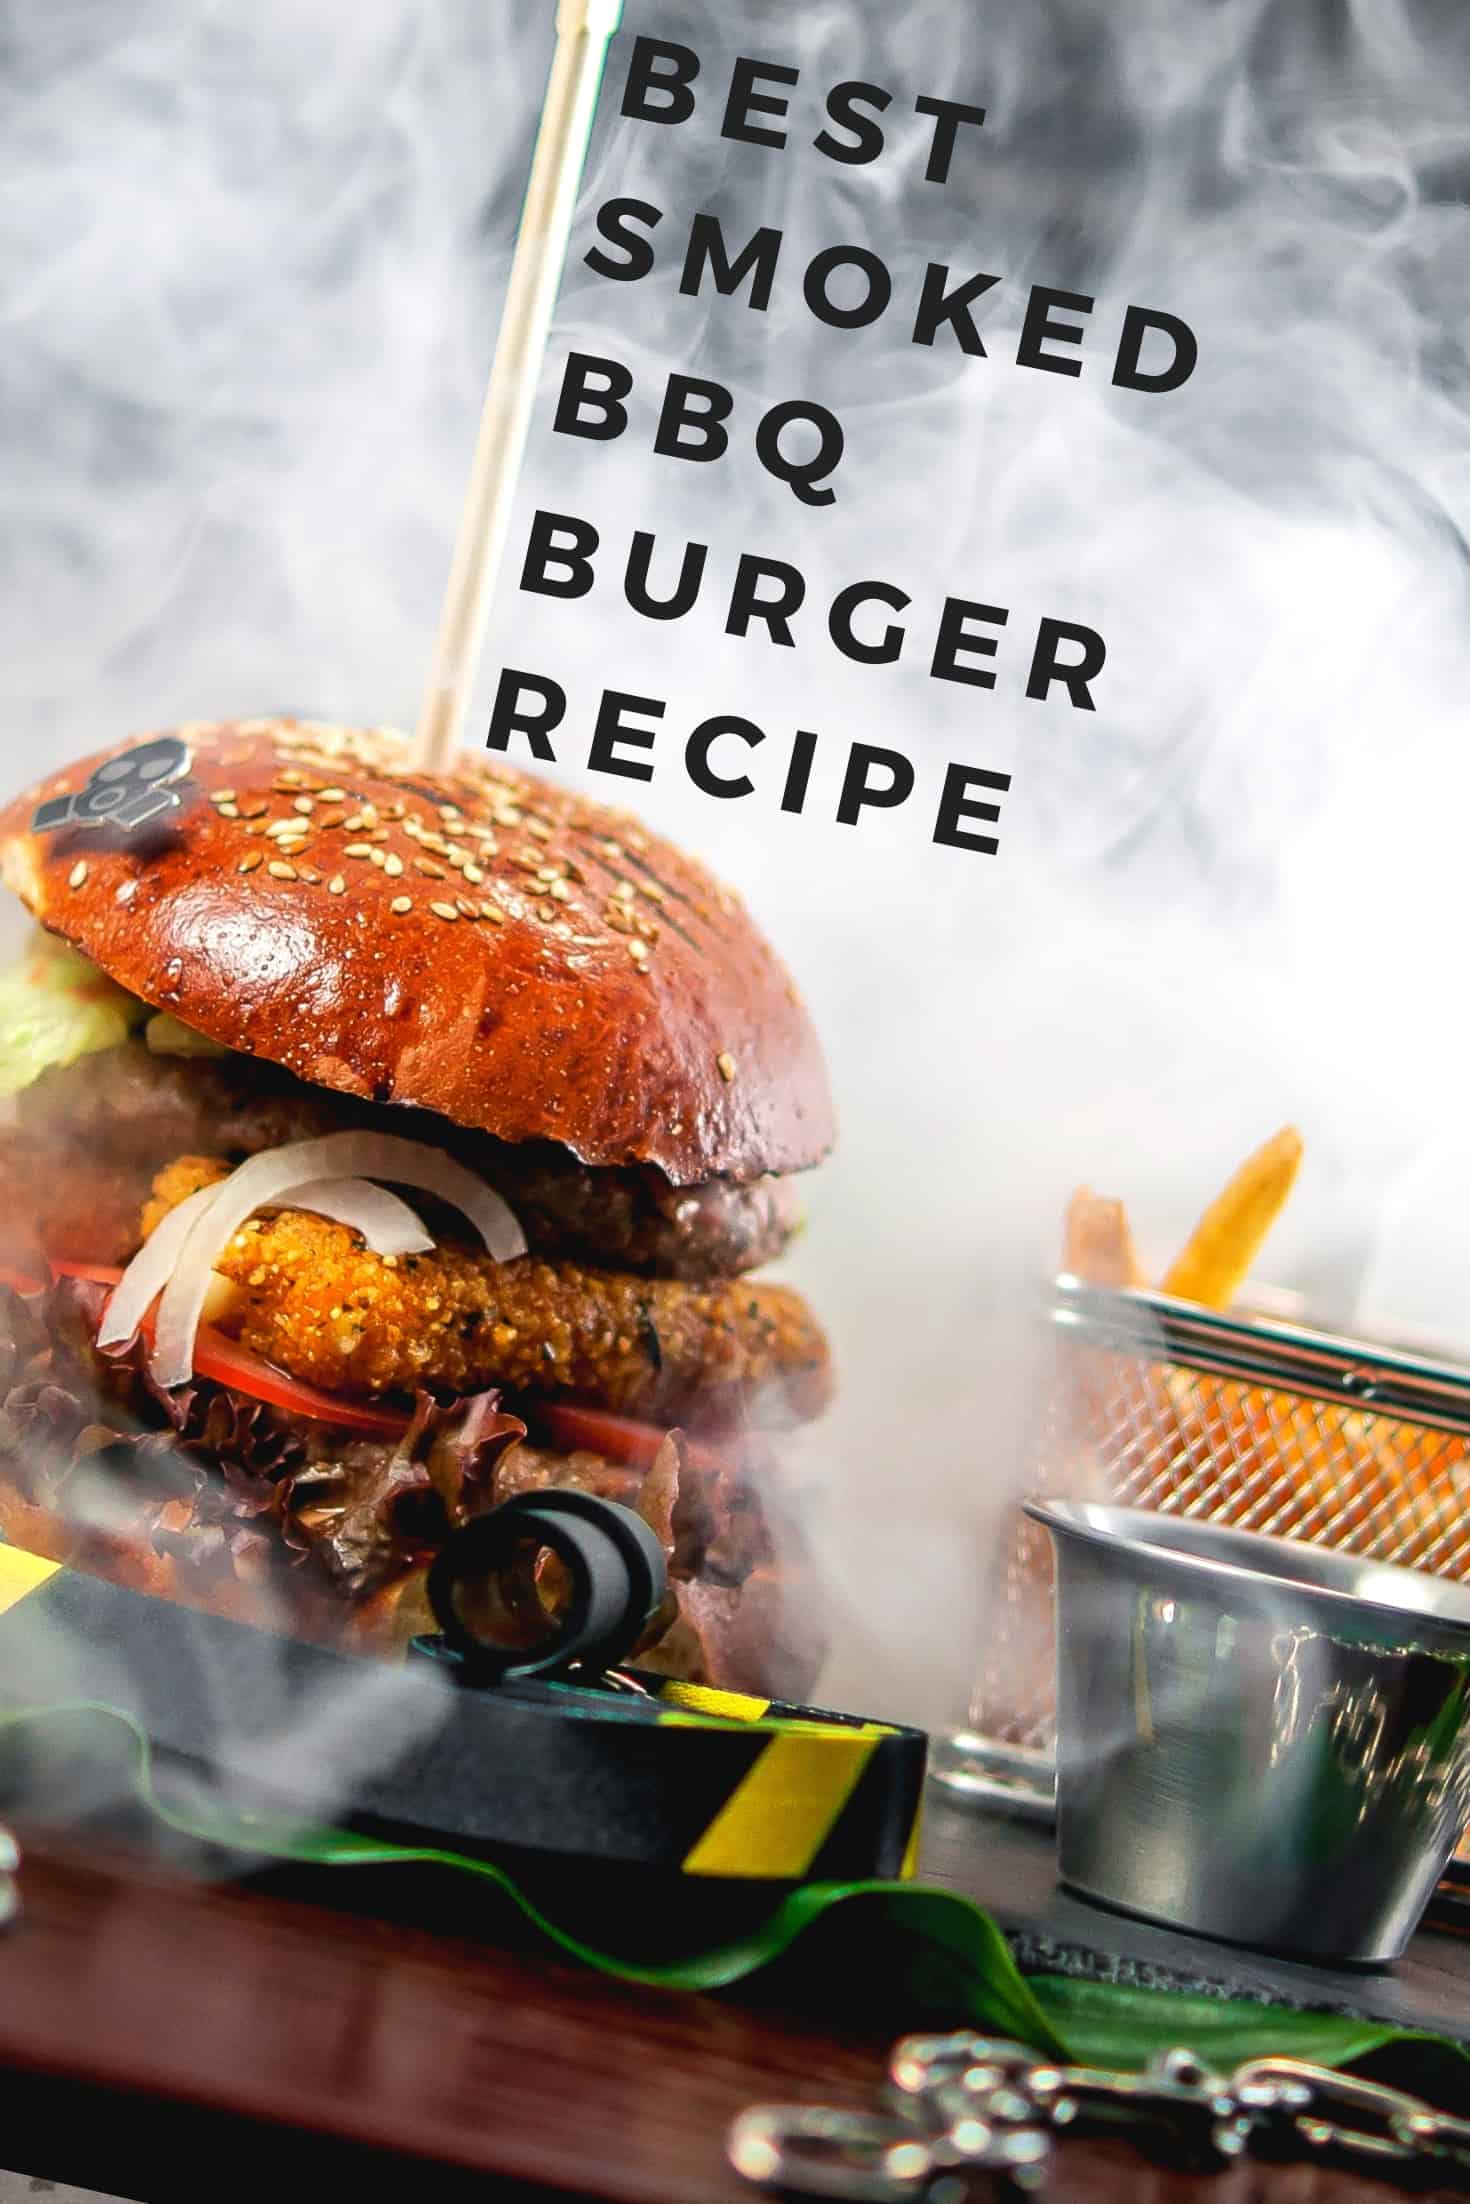 Best Smoked BBQ Burger recipe